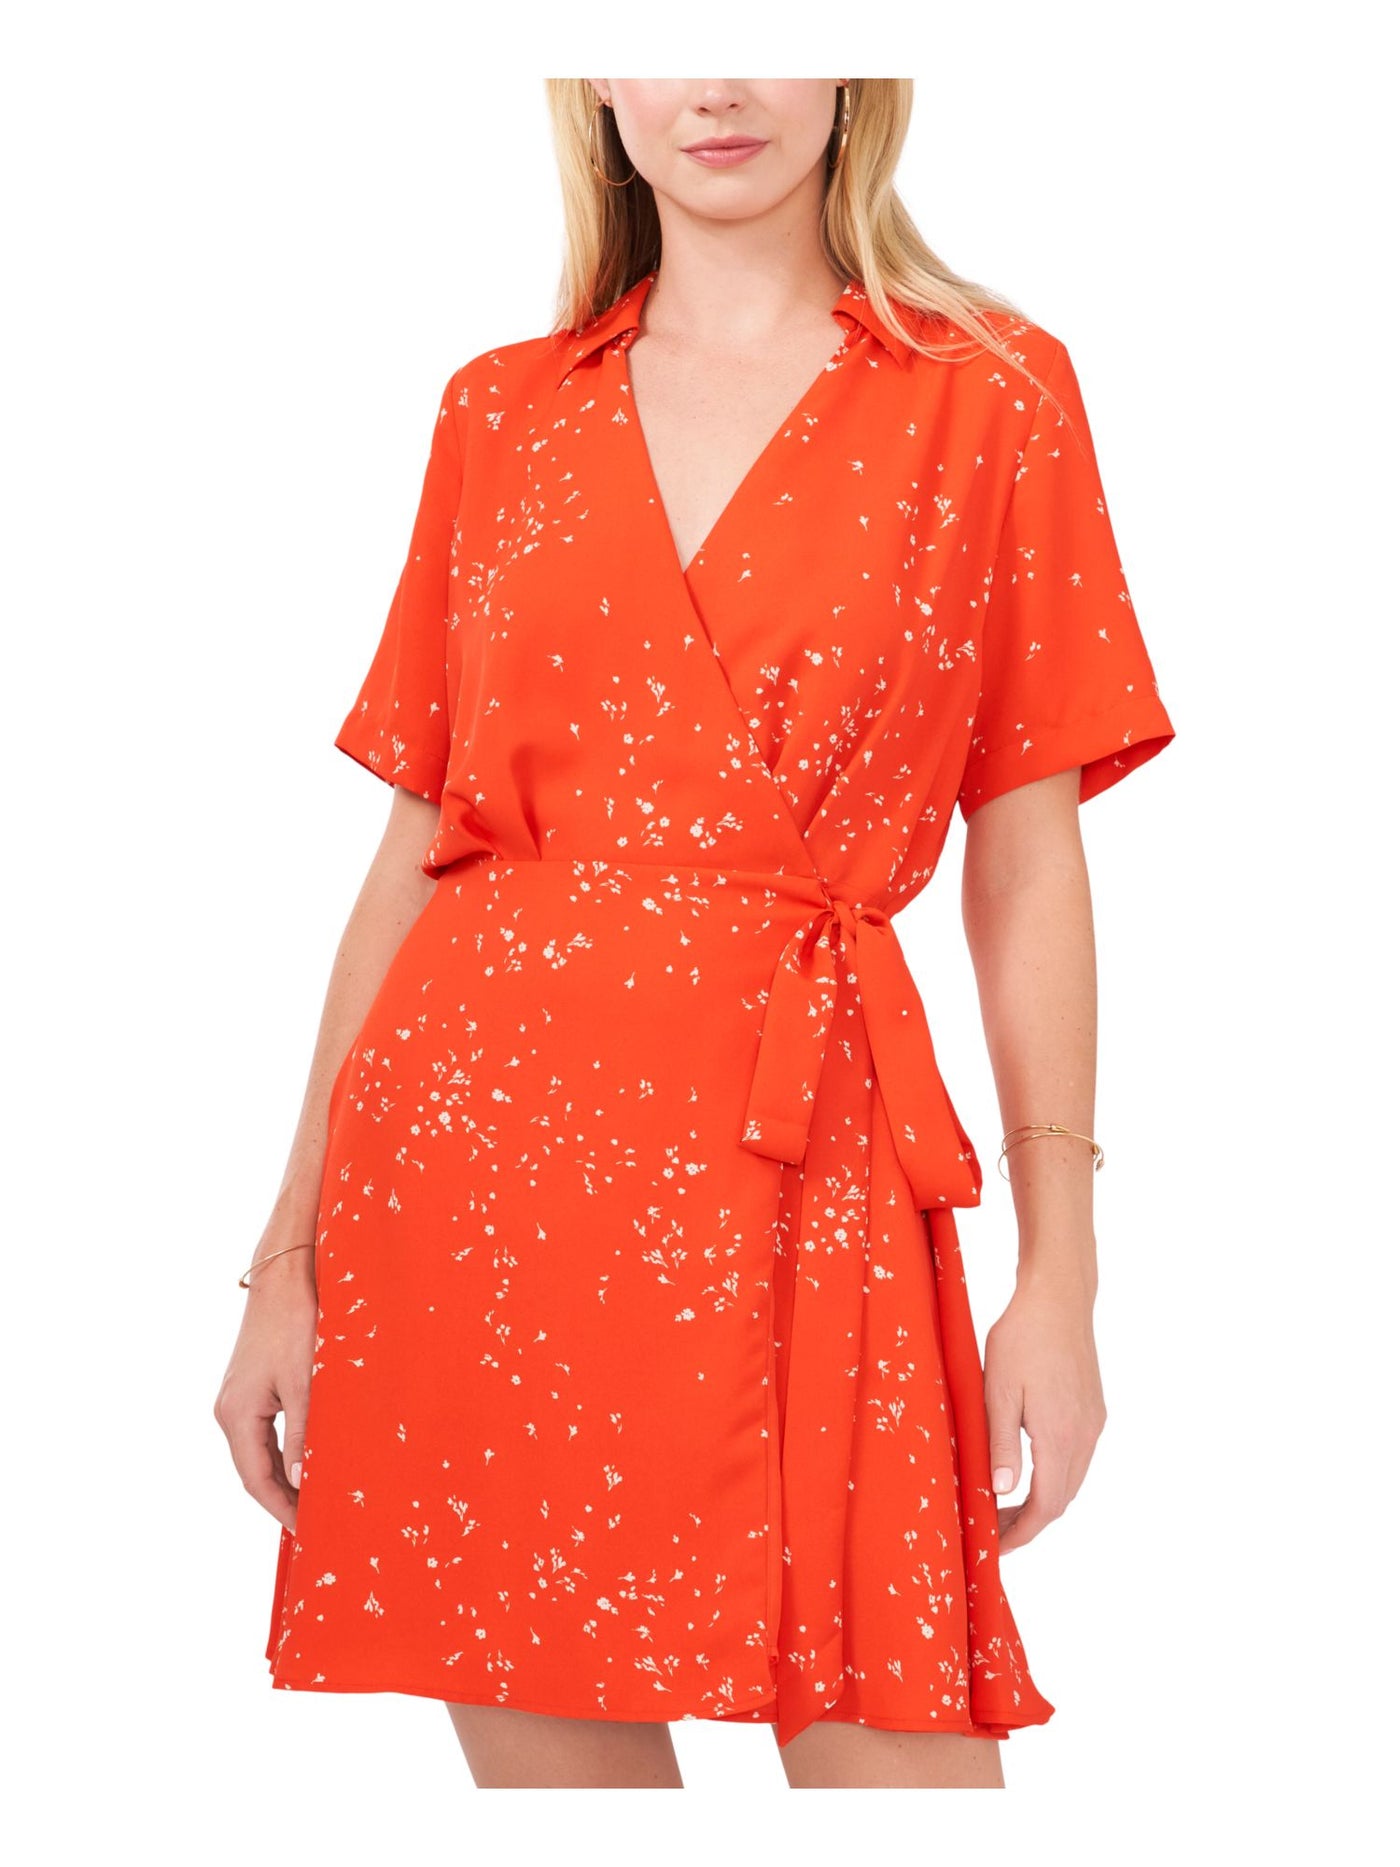 VINCE CAMUTO Womens Orange Tie Lined Floral Short Sleeve Surplice Neckline Short Wrap Dress L